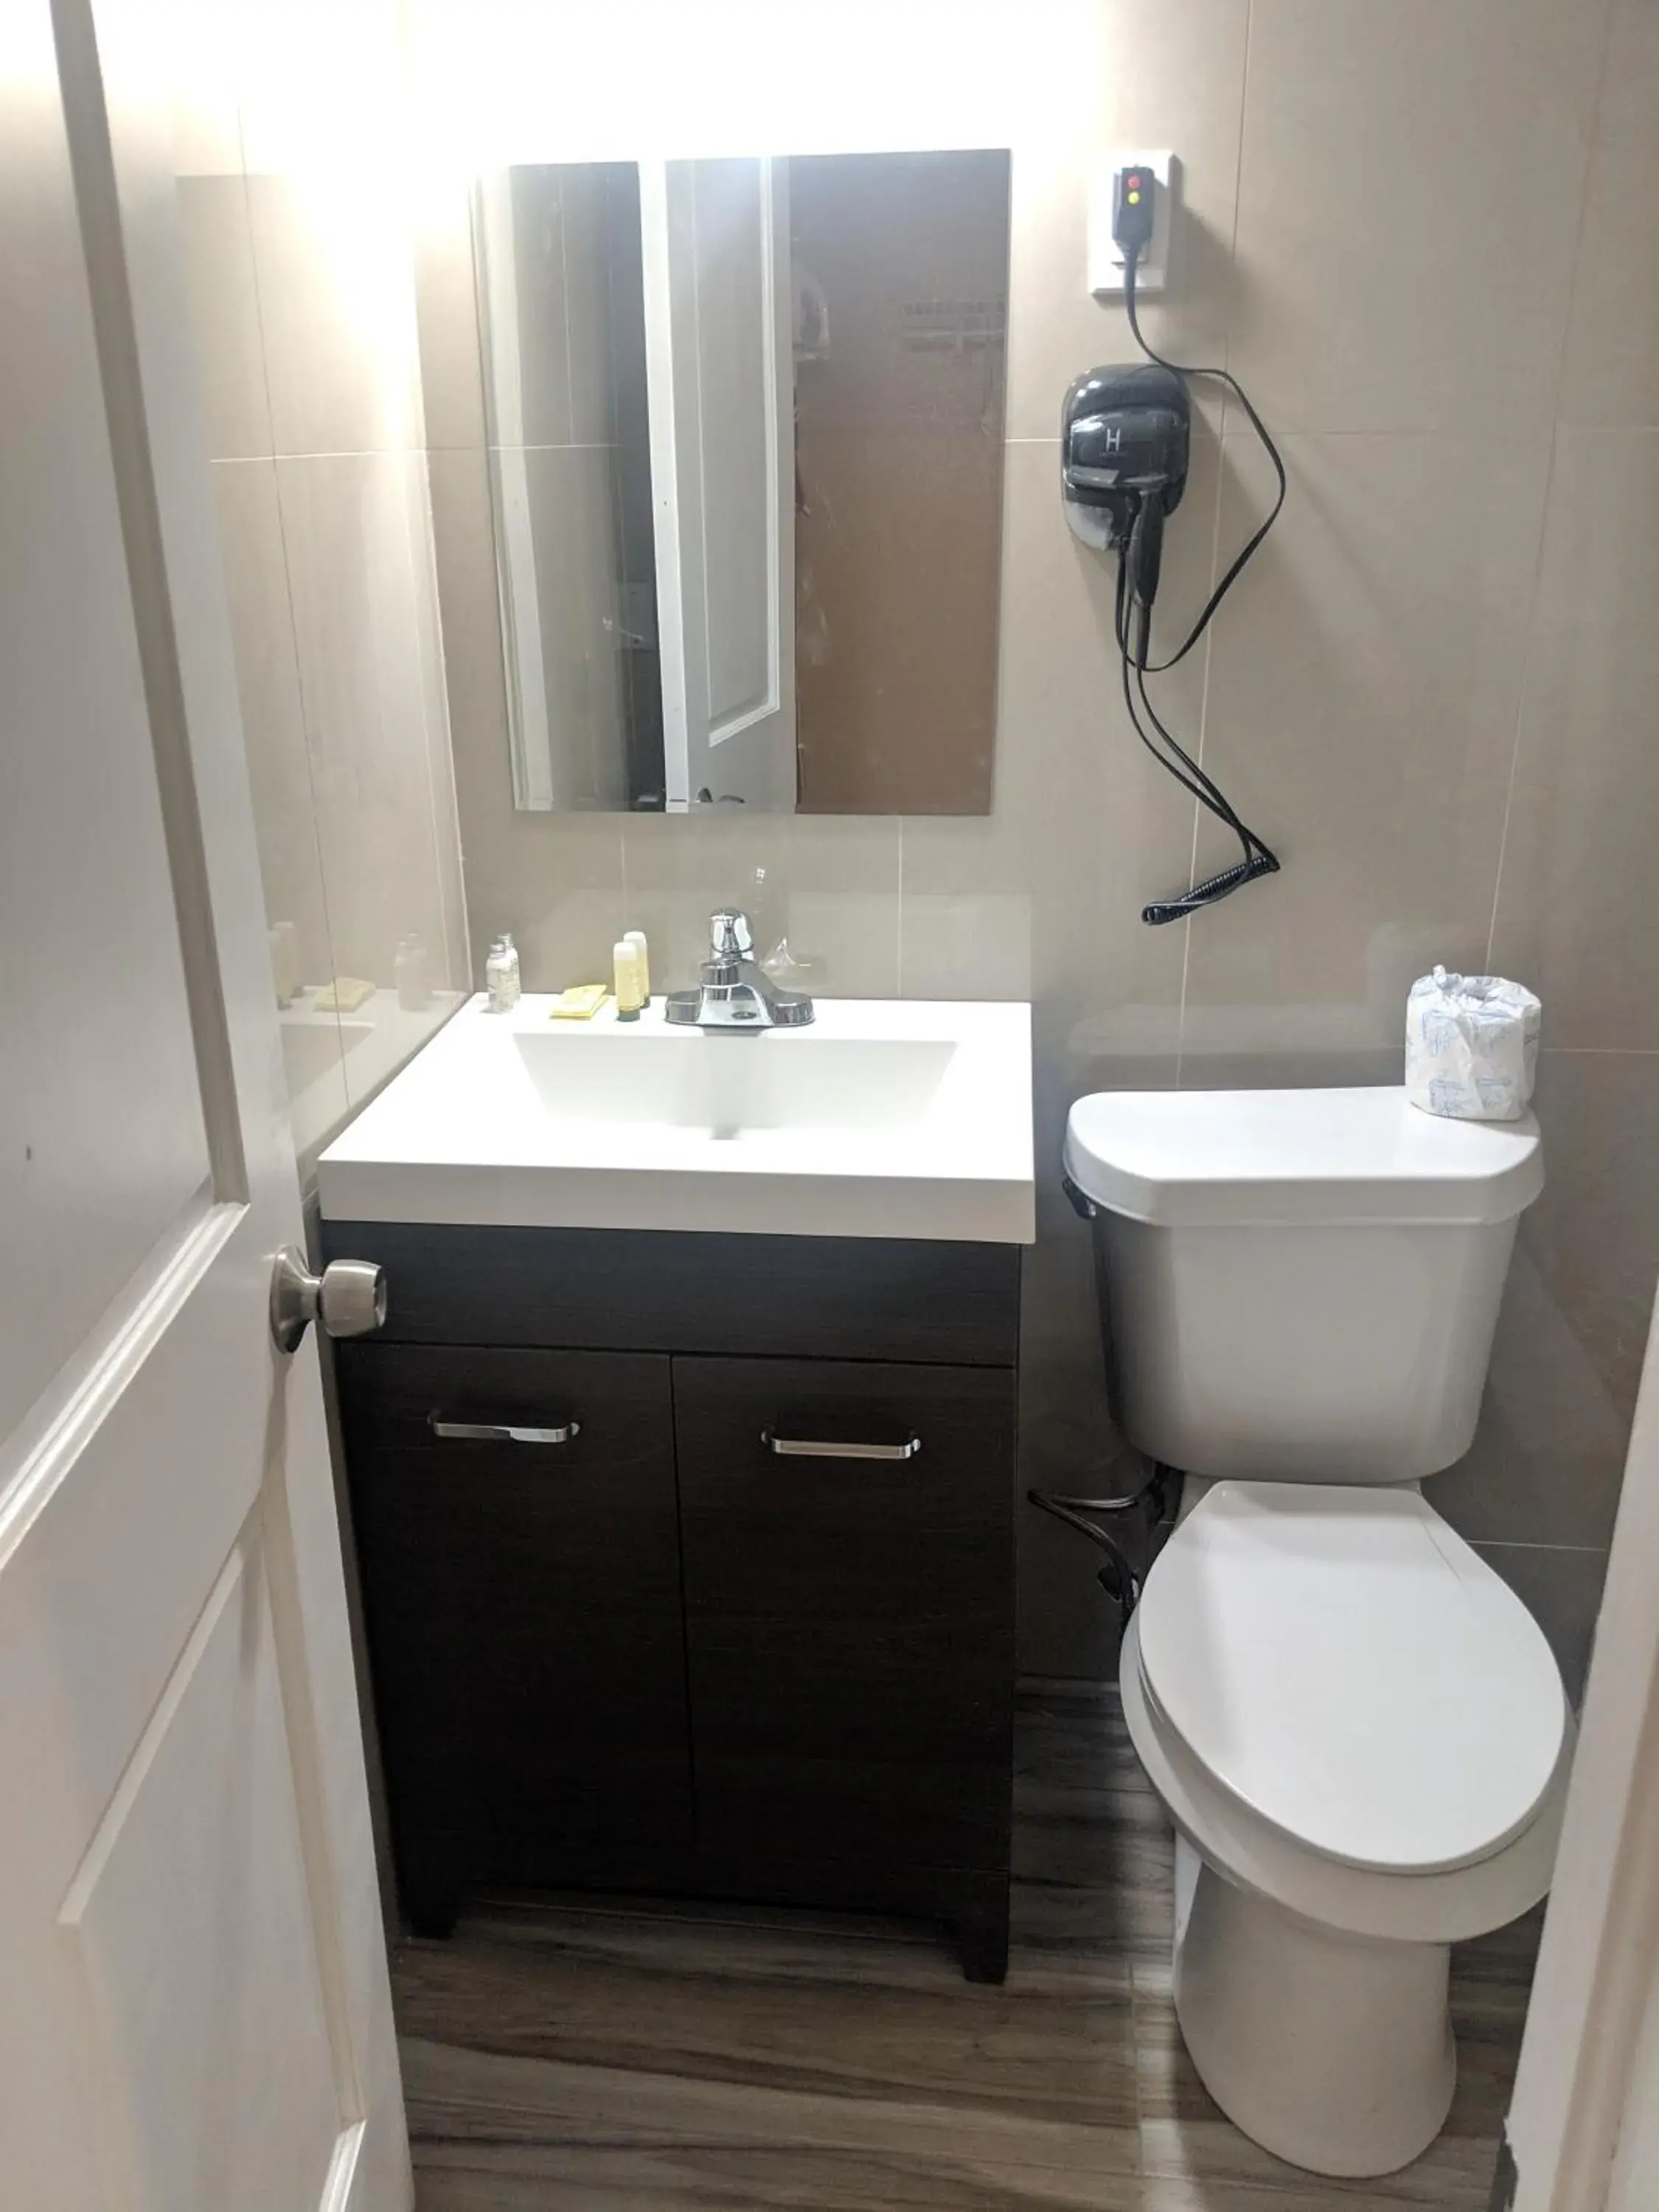 Bathroom in A-1 Budget Motel